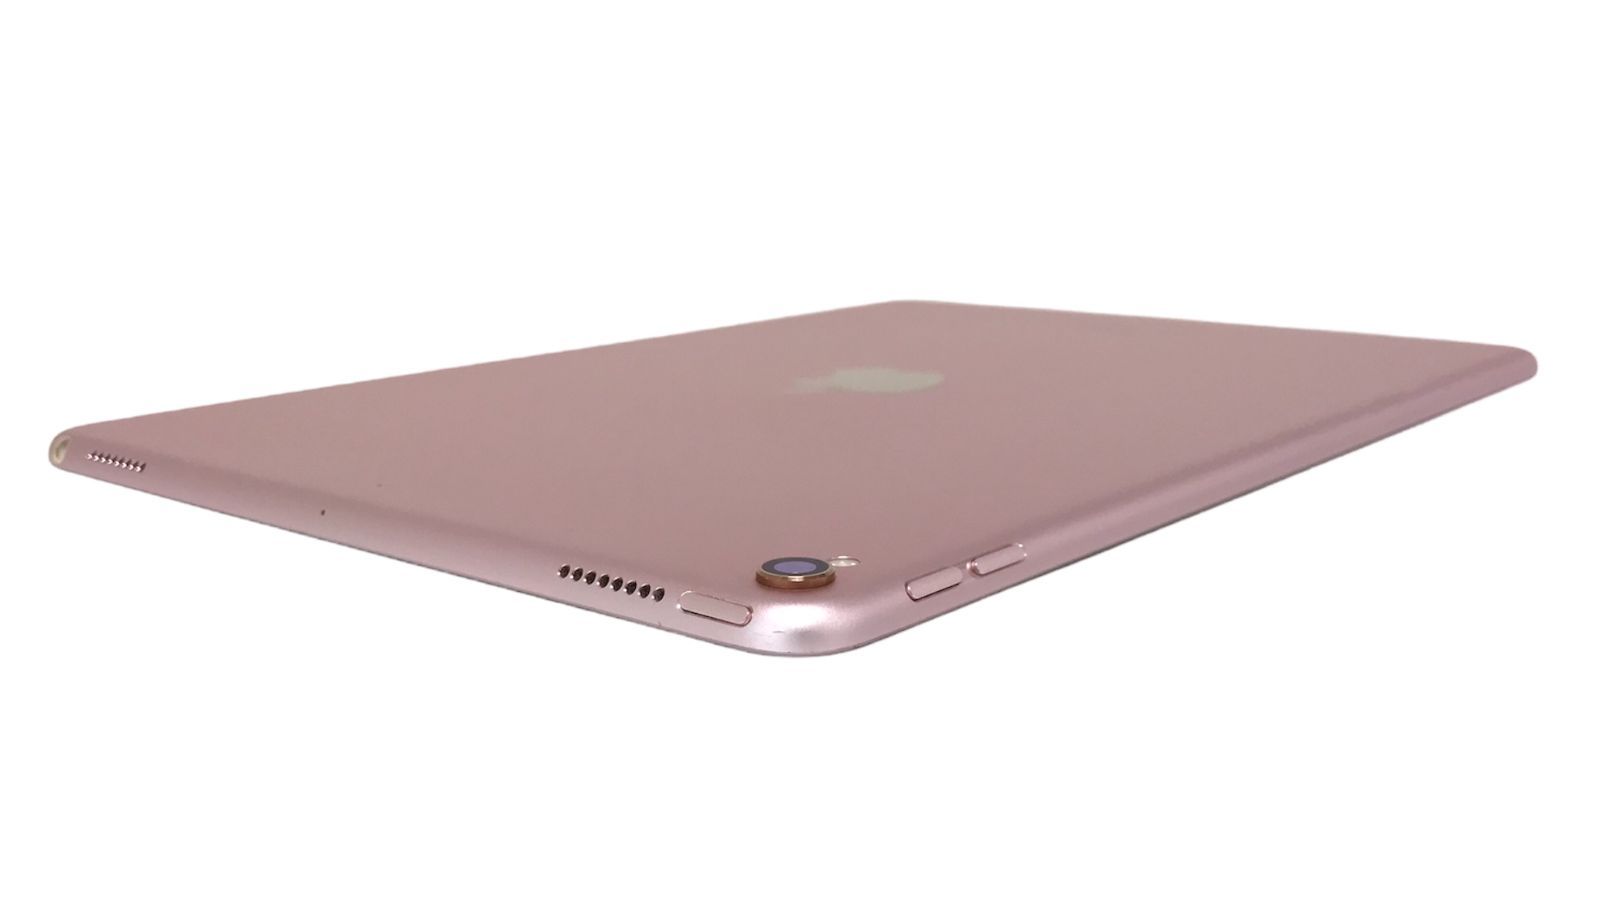 θ iPad Pro 10.5インチ Wi-Fi 256GB ローズゴールド - メルカリ